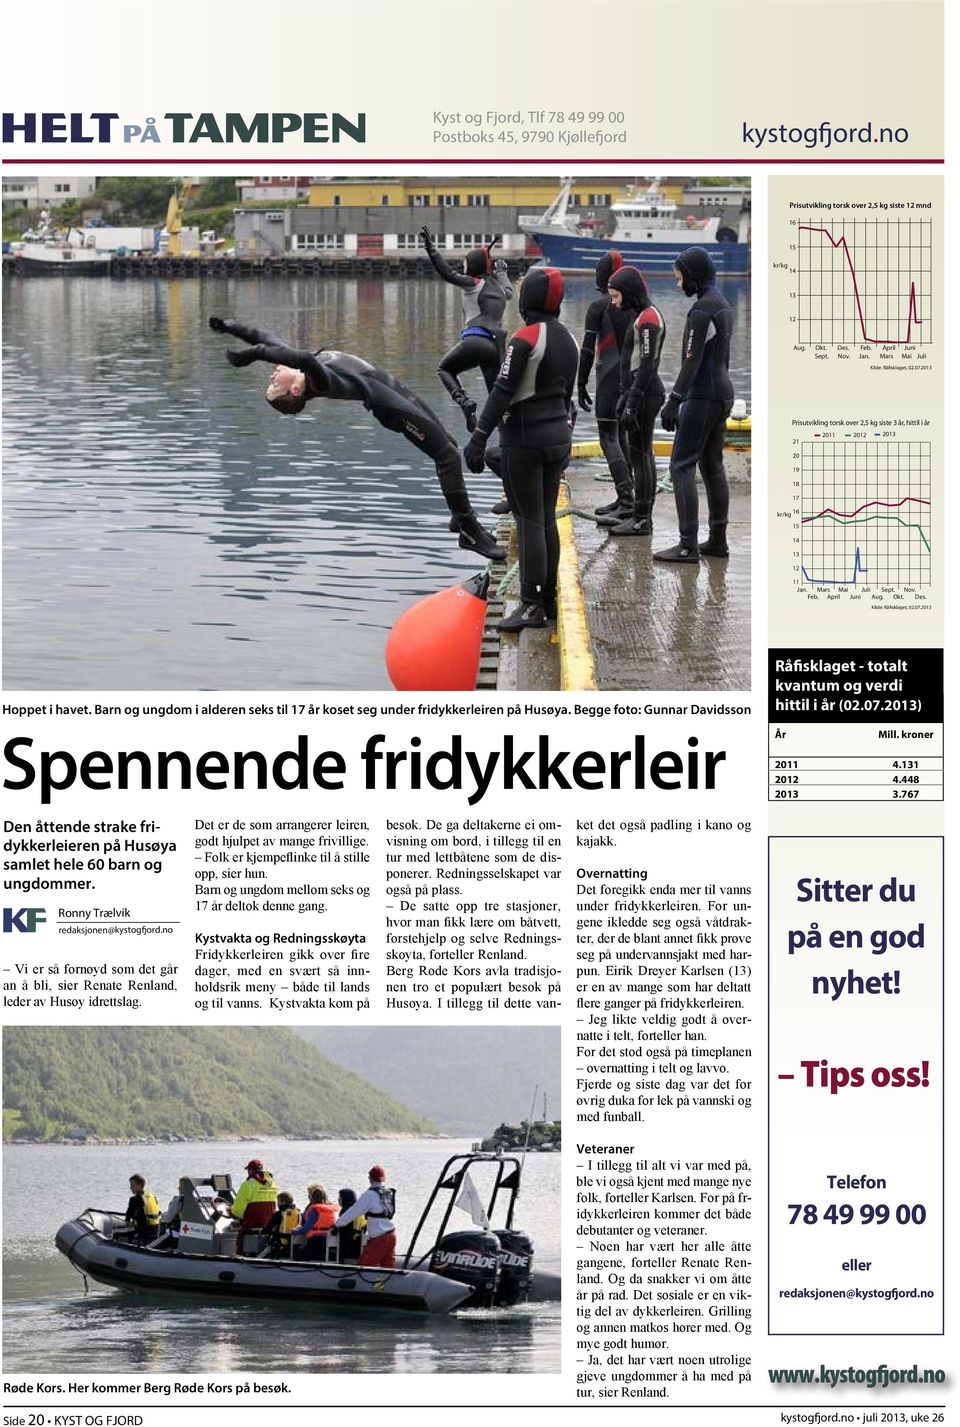 Juni Aug. Okt. Des. Kilde: Råfisklaget, 02.07.2013 Hoppet i havet. Barn og ungdom i alderen seks til 17 år koset seg under fridykkerleiren på Husøya.